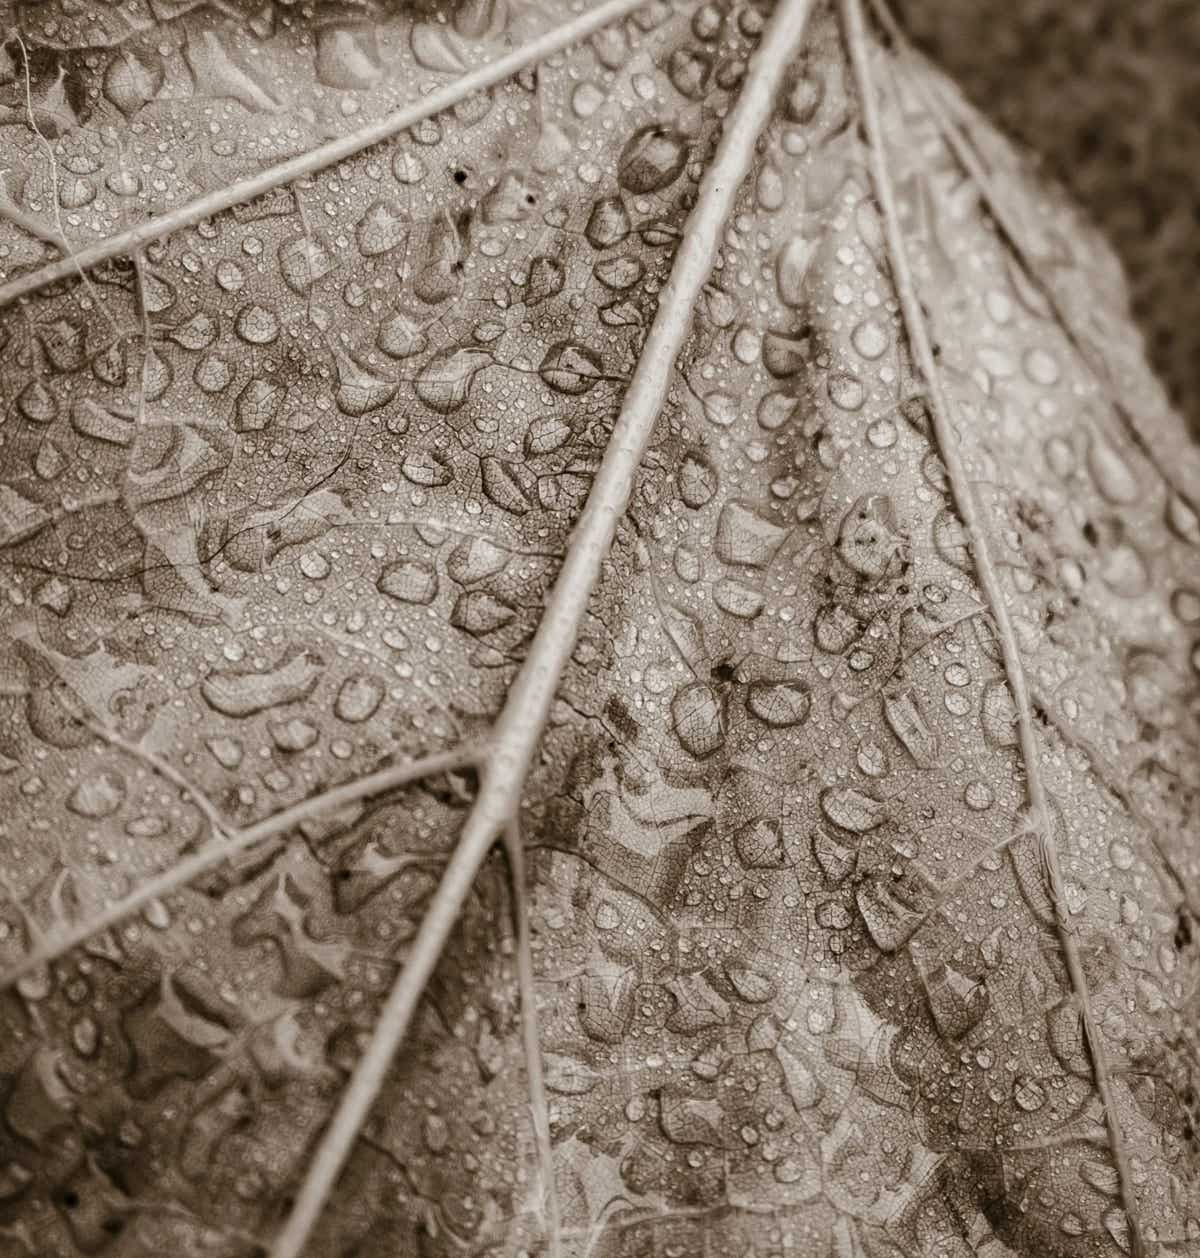 Herfstblad met regendruppels